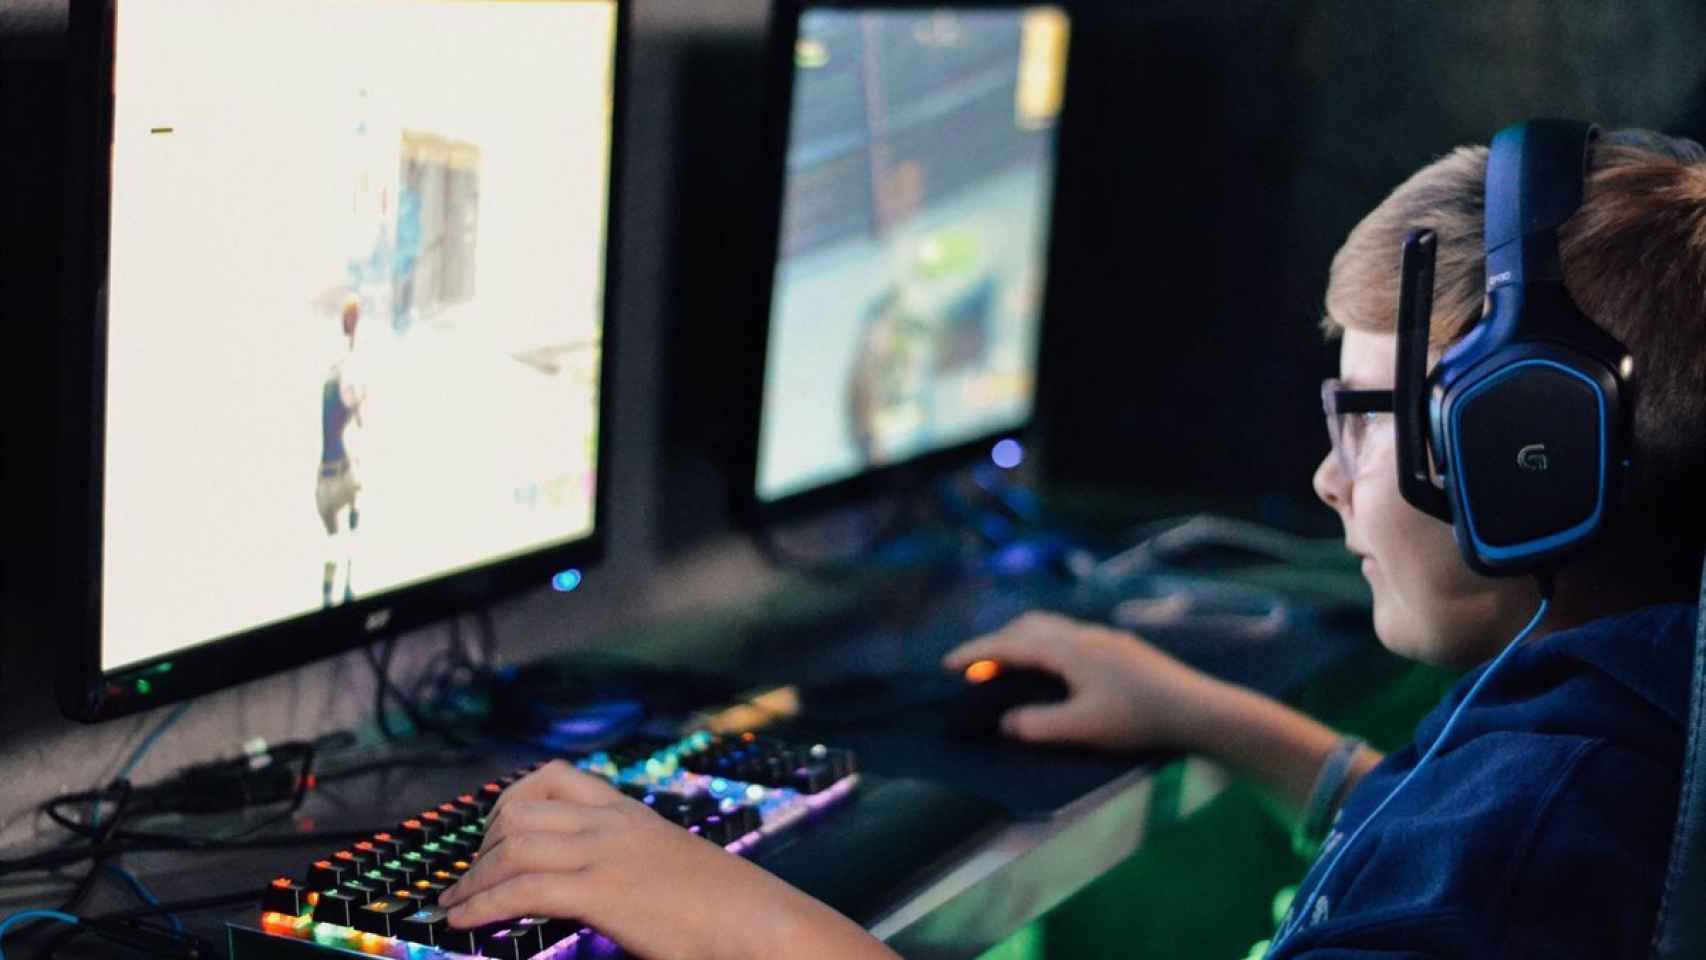 Un joven jugando a un videojuego.